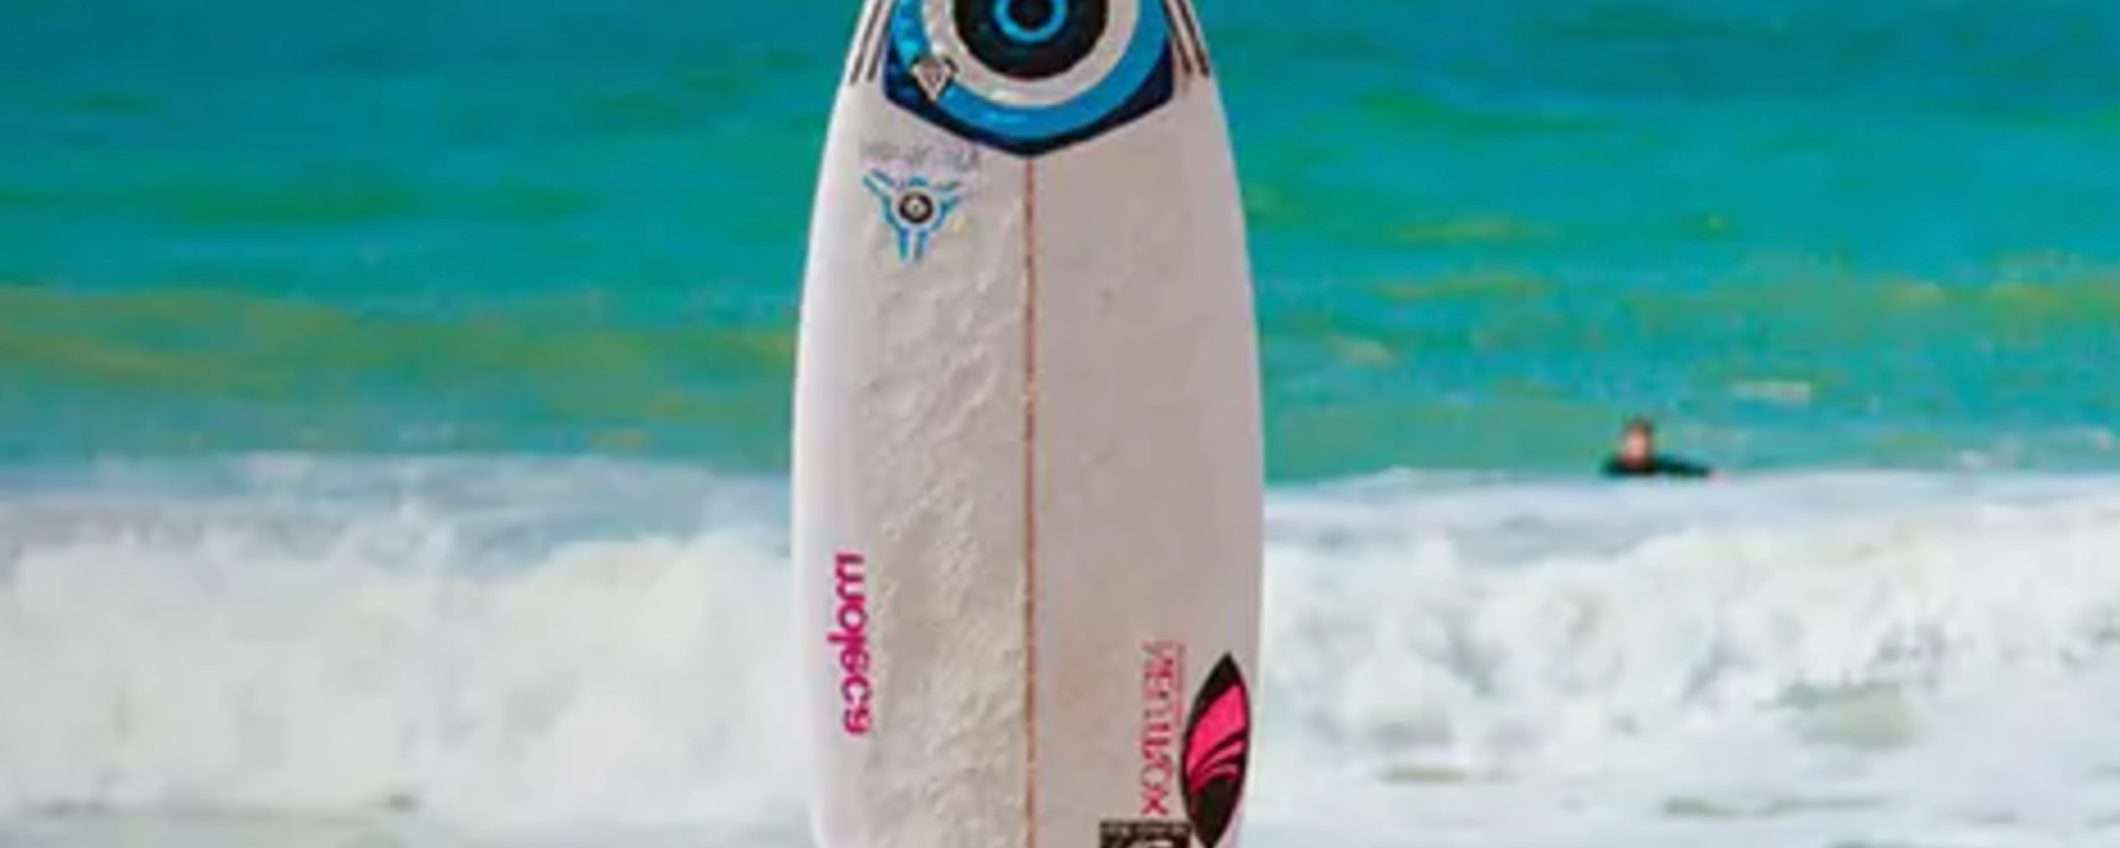 Engie: Cavalca l'onda con Surfing Luce e Gas